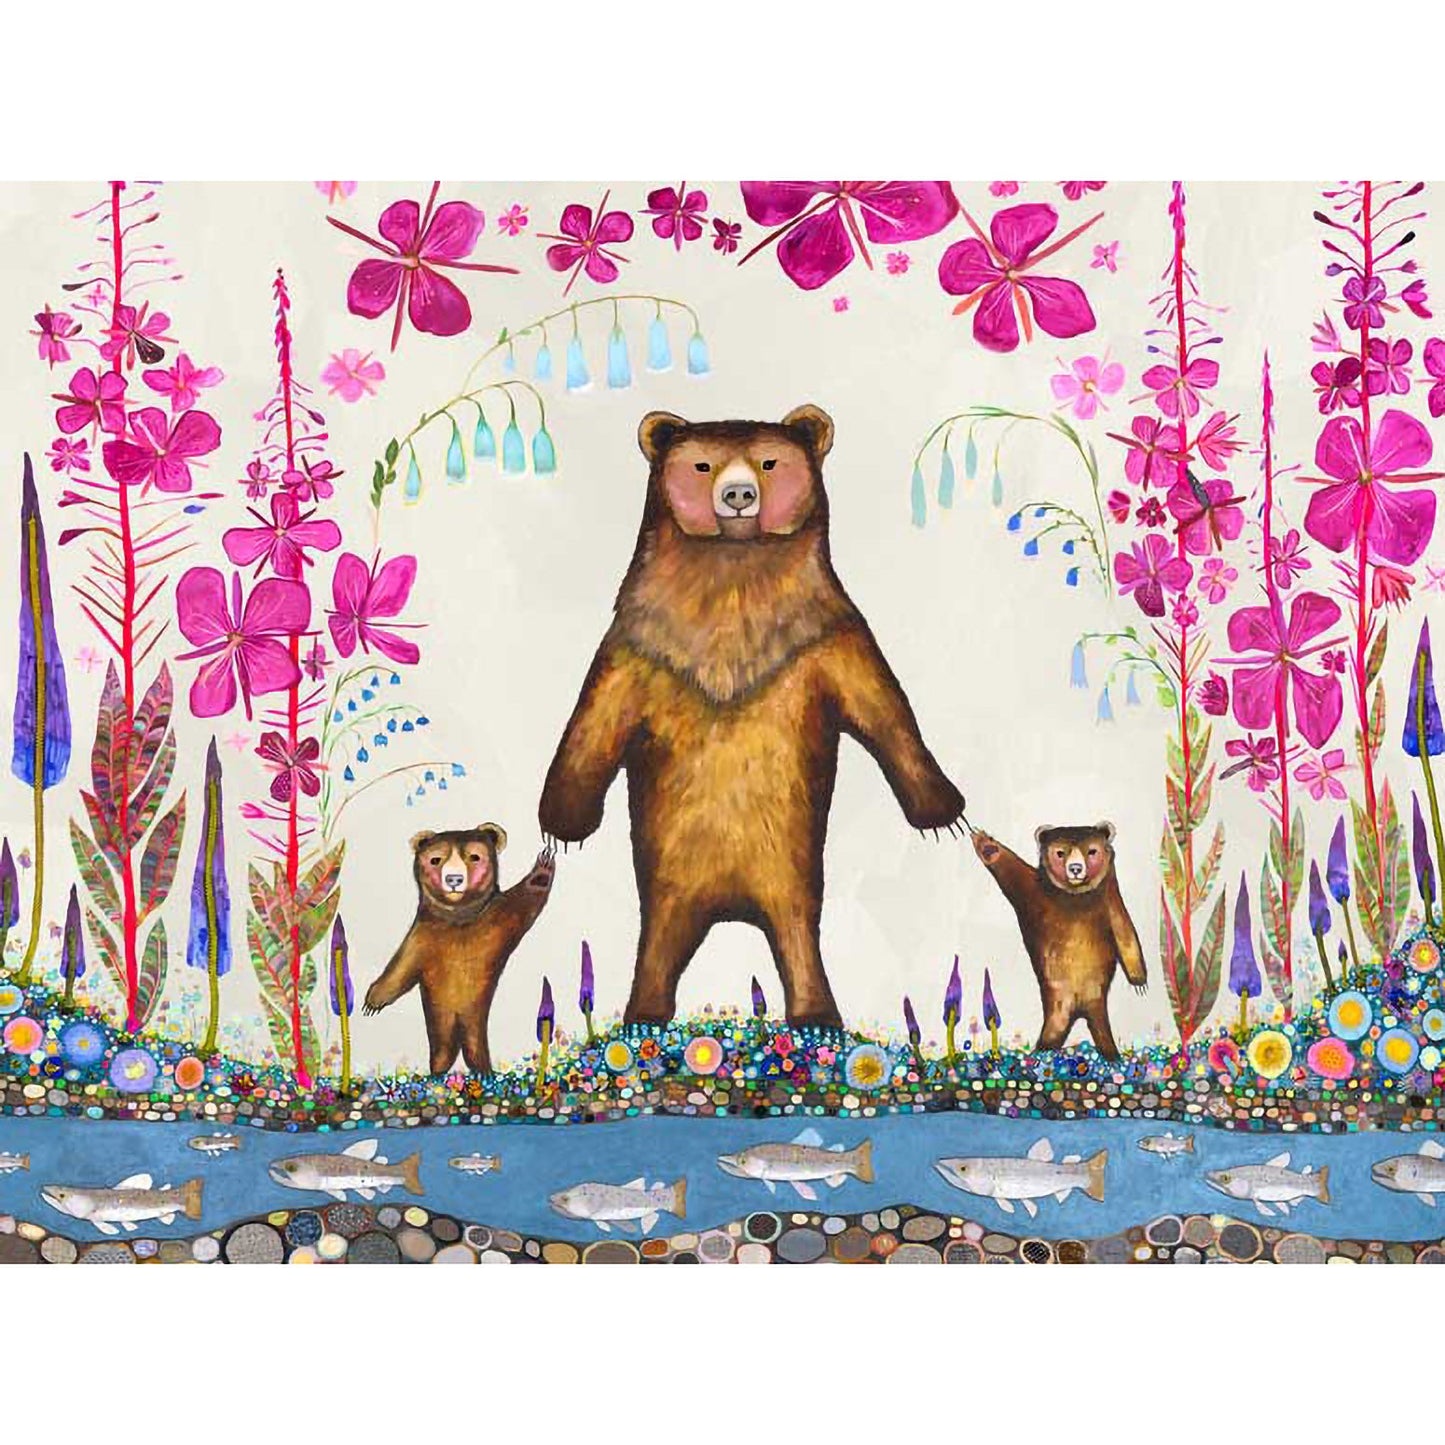 Three Bears Canvas Wall Art